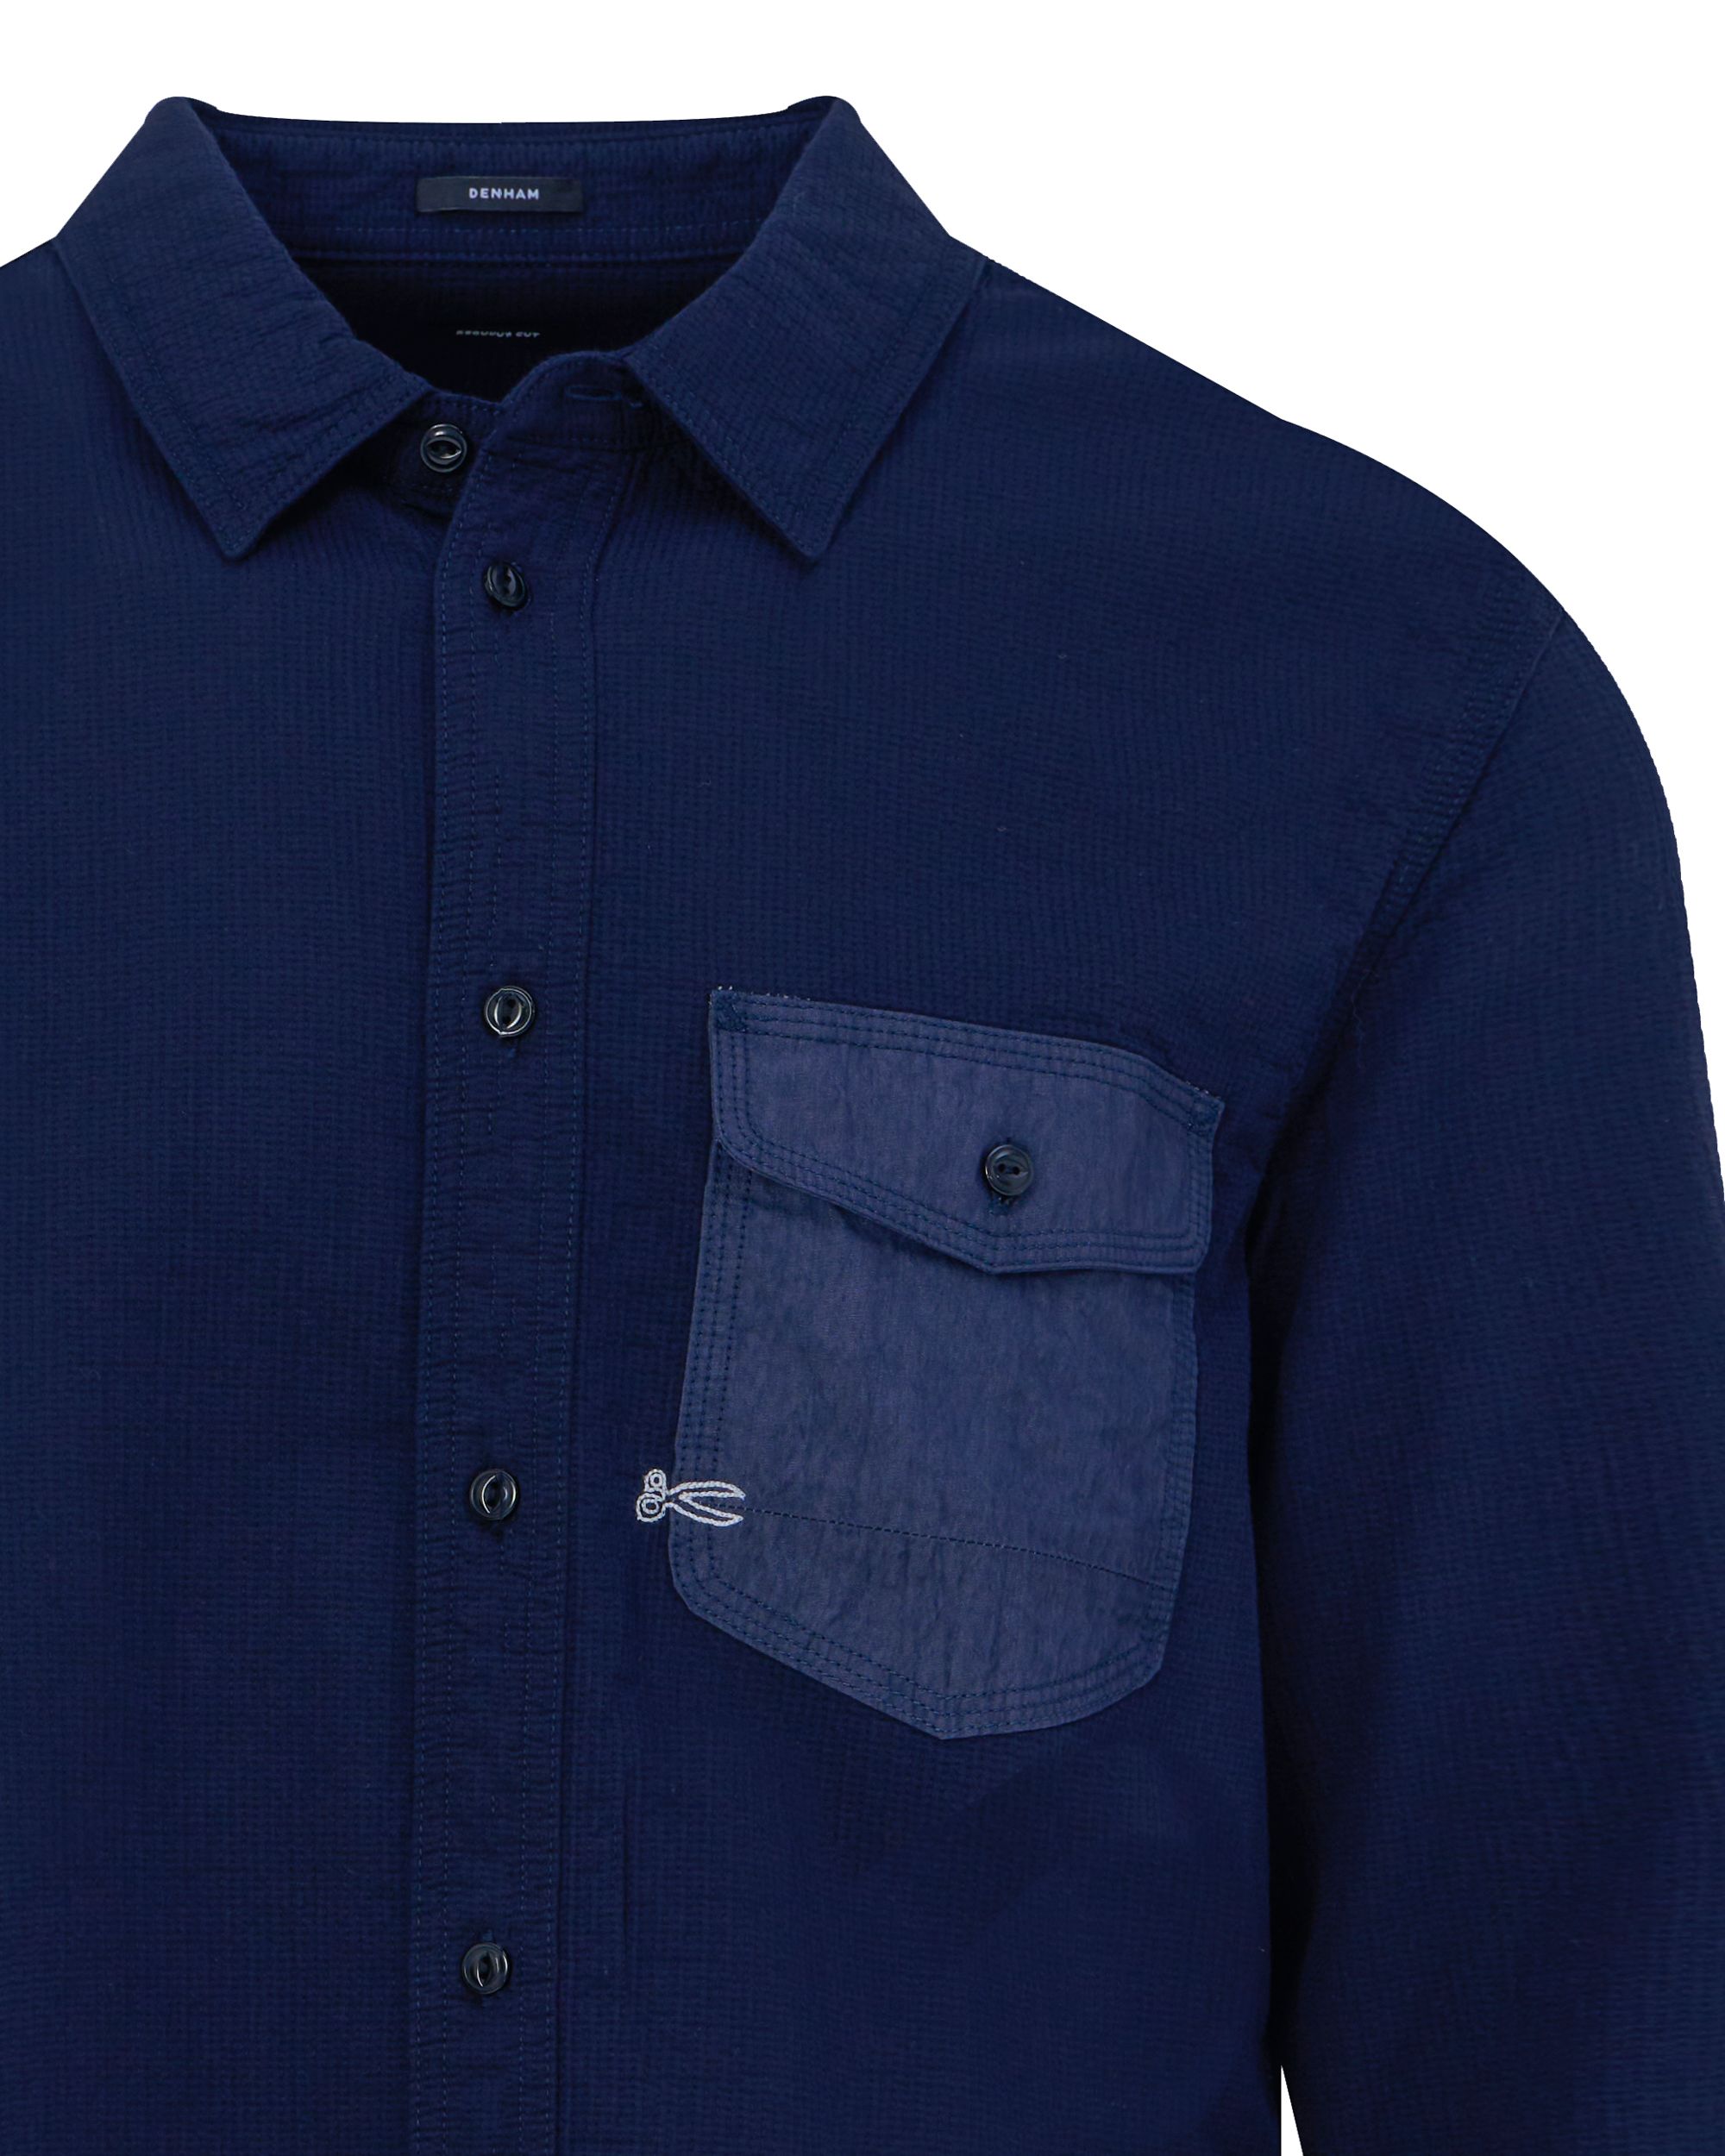 DENHAM Worker Casual Overhemd LM Donker blauw 091004-001-L